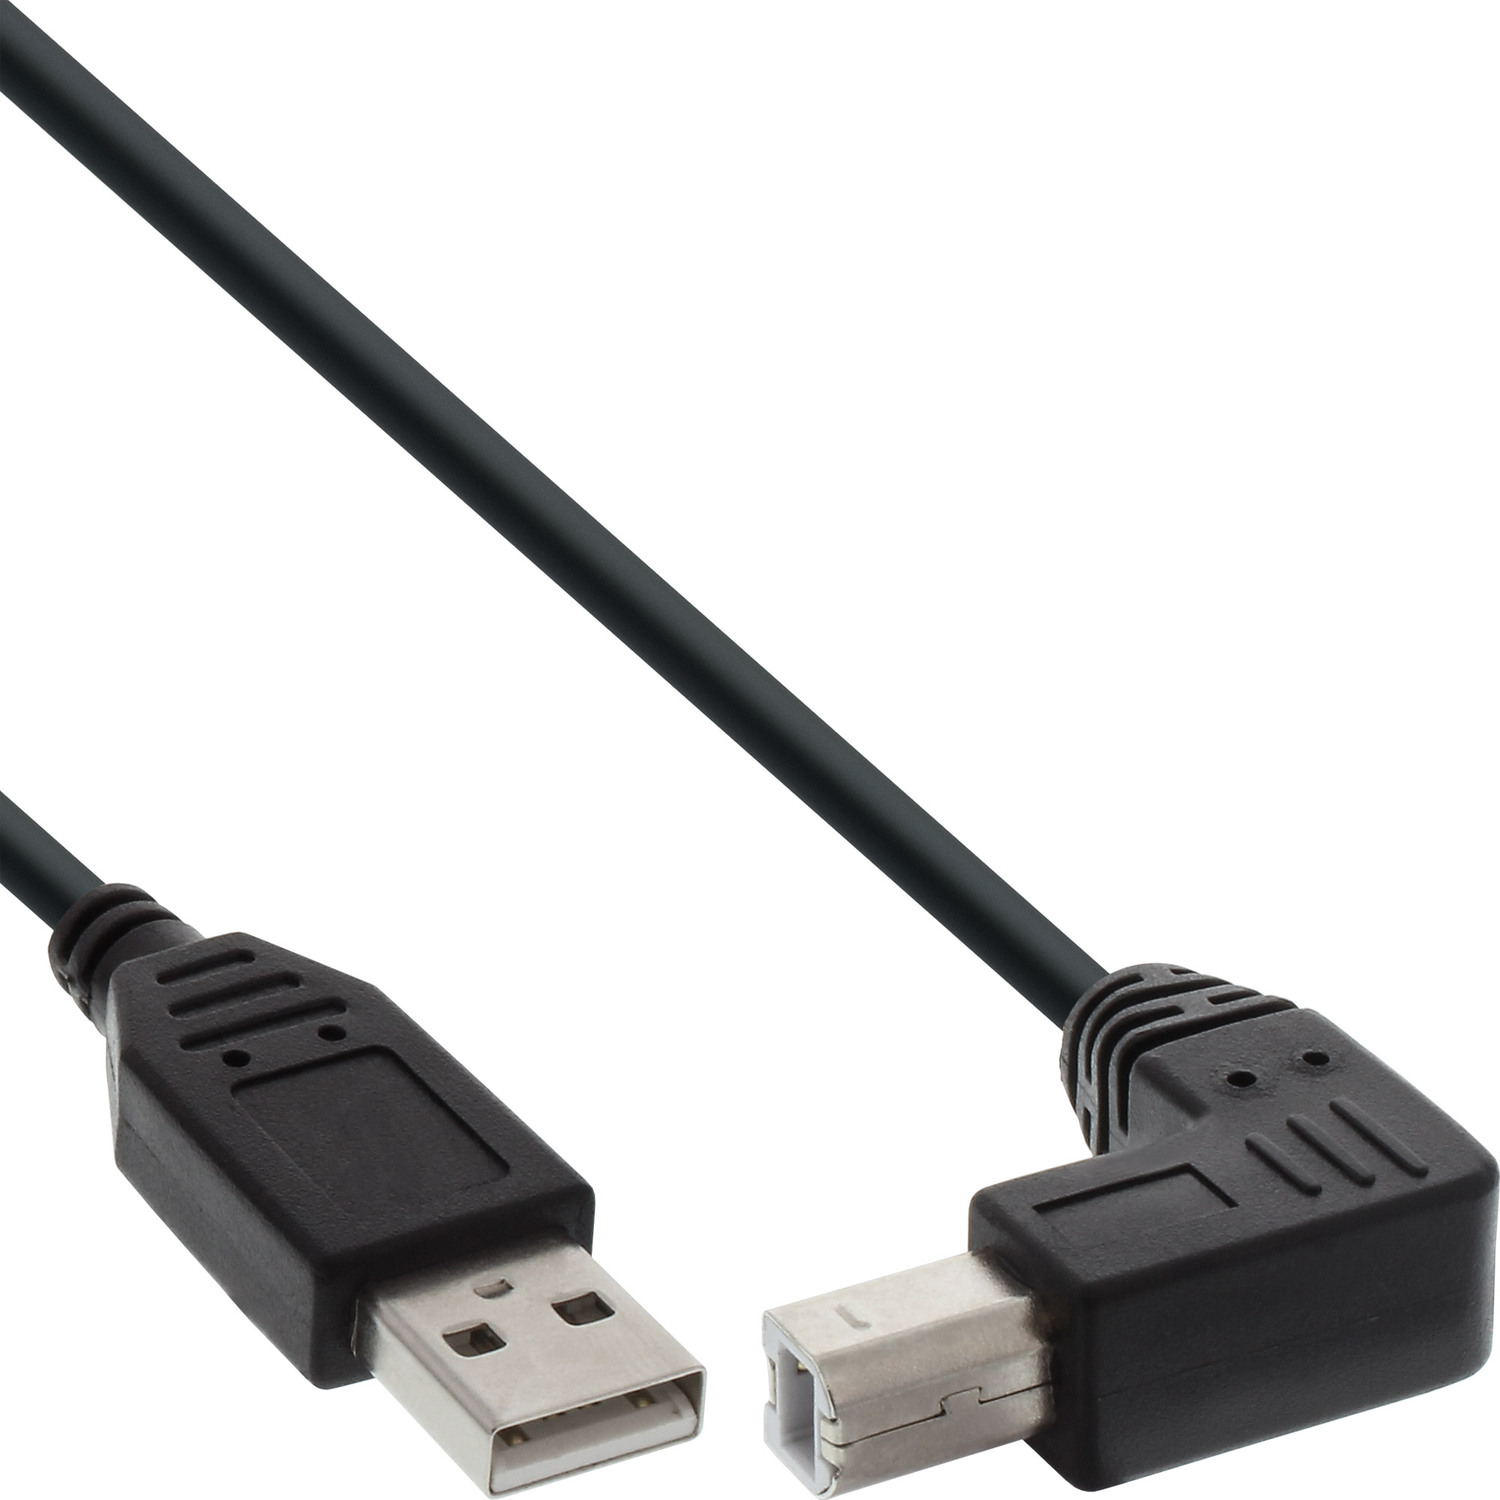 2.0 USB Kabel, 5m Kabel abgewinkelt, schwarz, INLINE InLine® USB unten A B an